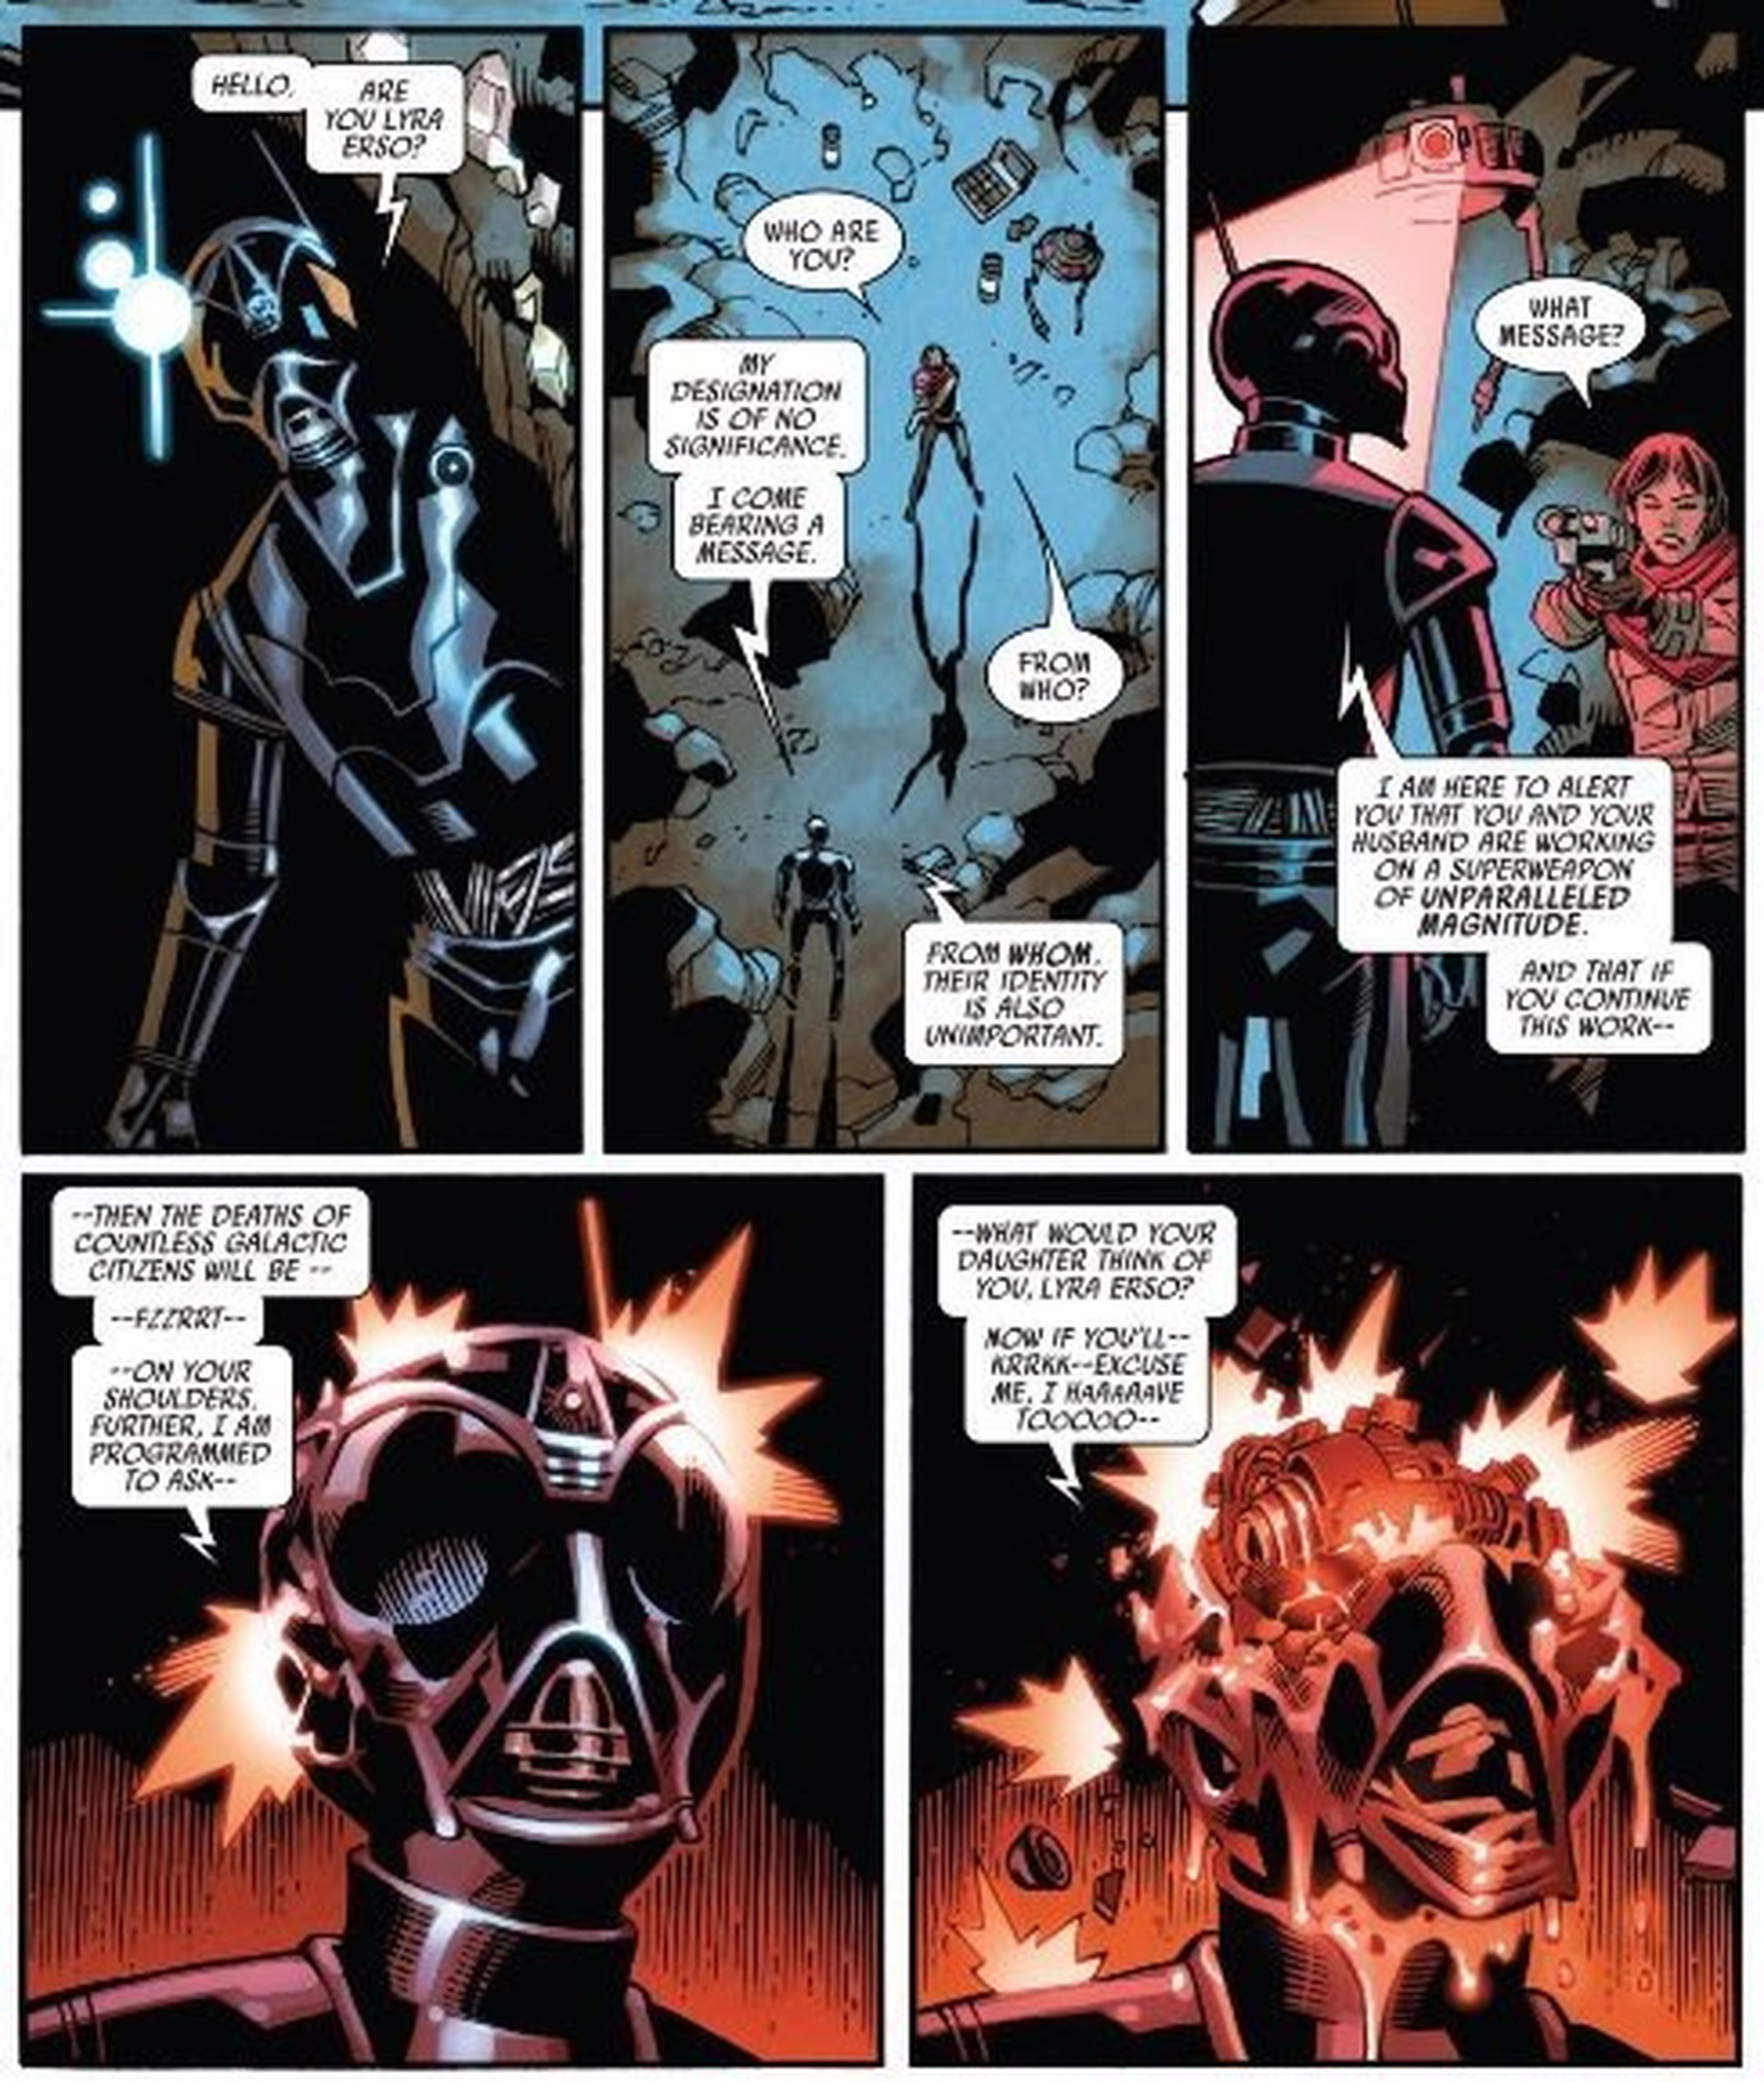 Darth Vader Annual 2